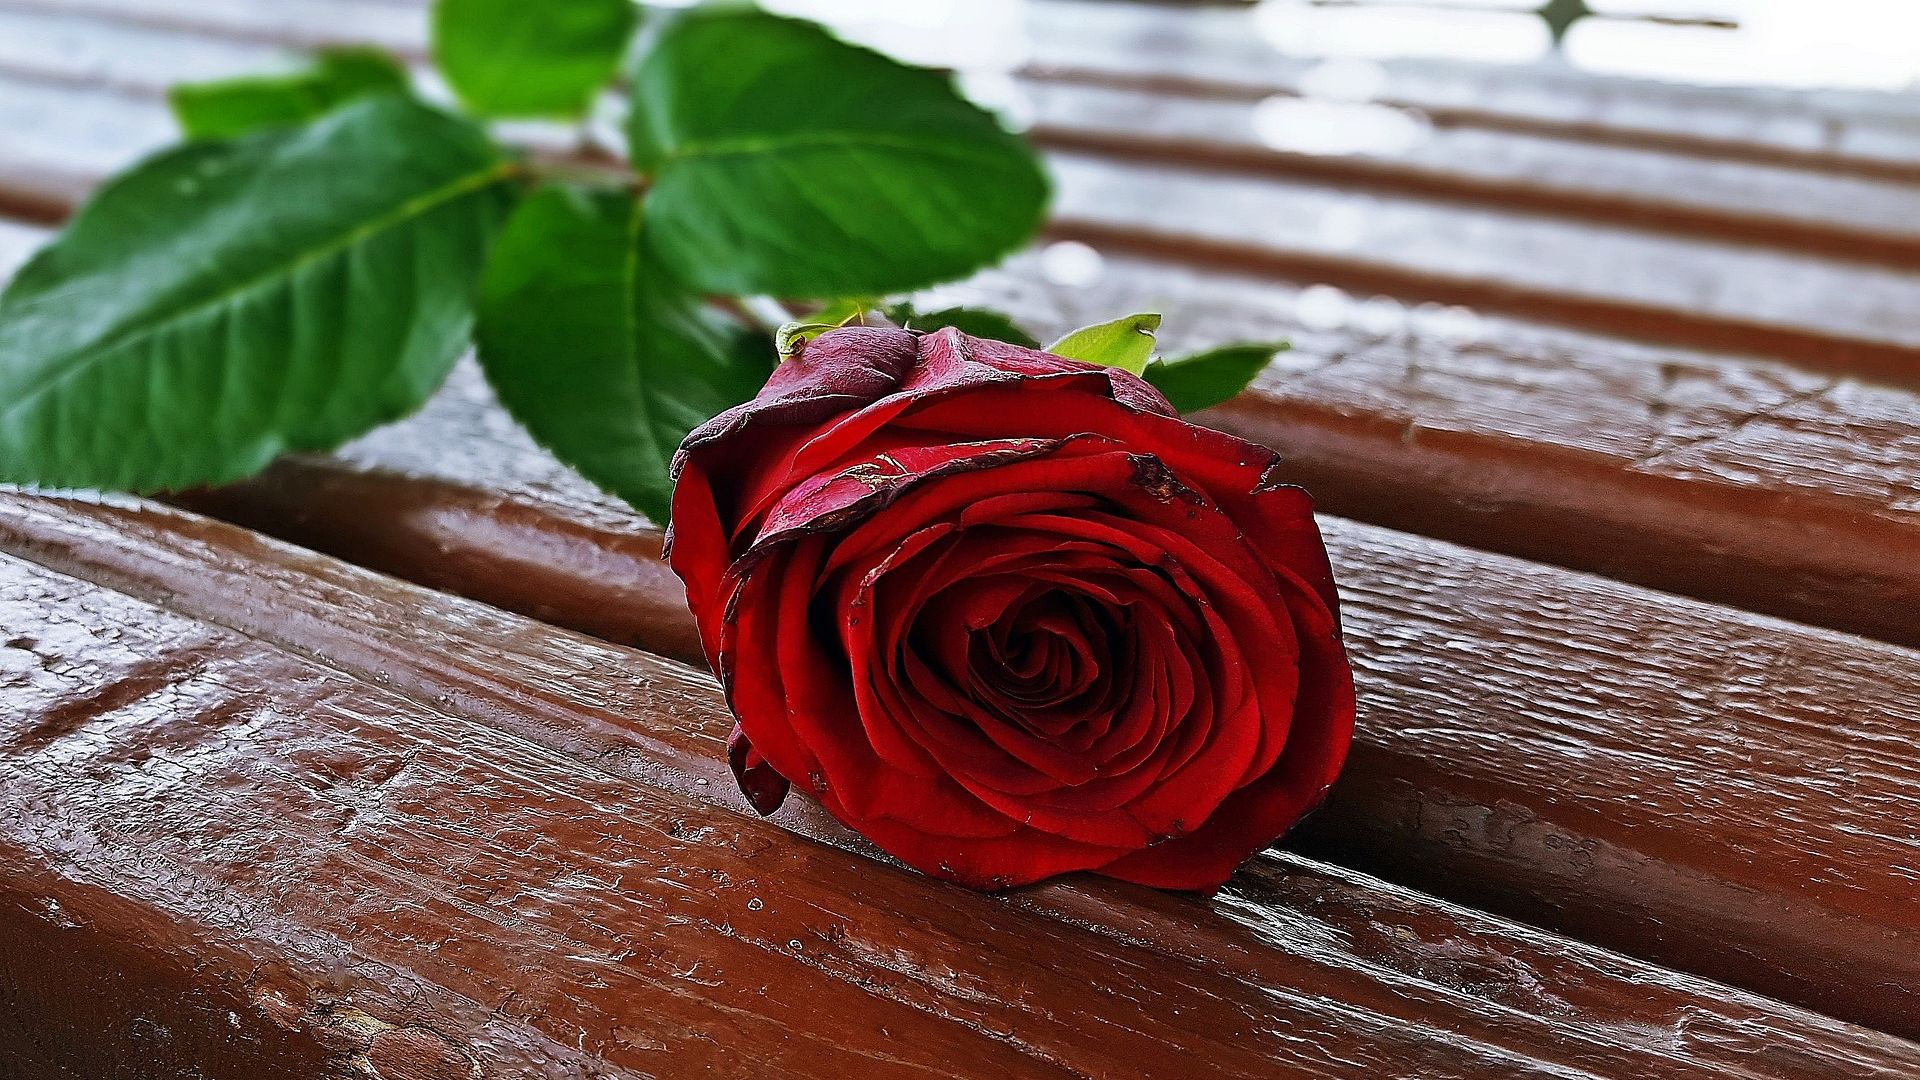 Wallpaper Red rose flower on table